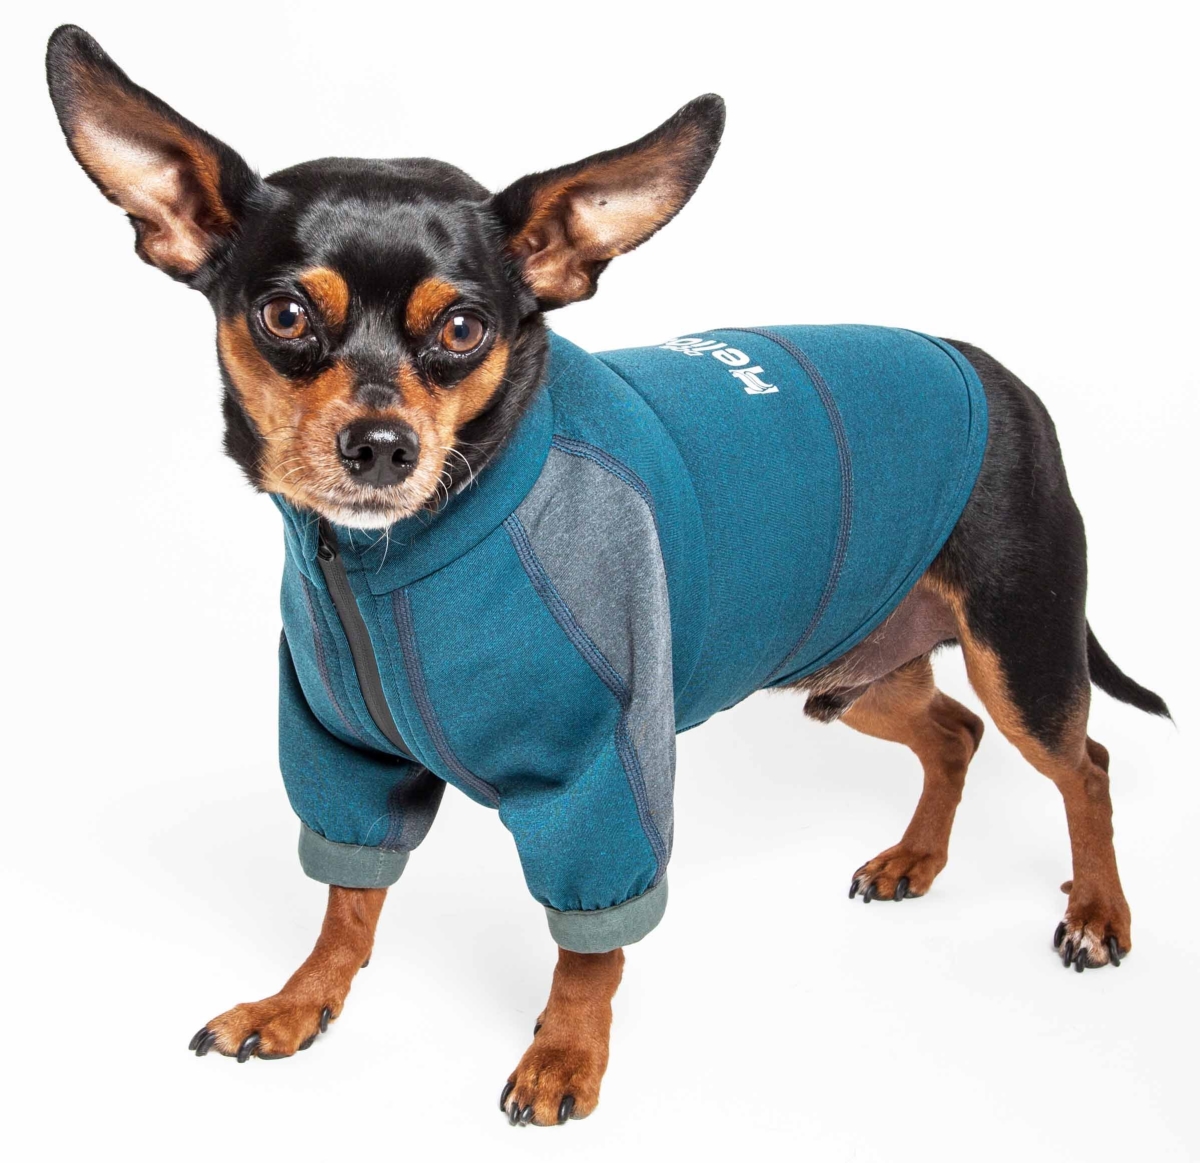 Tshl6bllg Eboneflow Mediumweight 4-way-stretch Flexible & Breathable Performance Dog Yoga T-shirt, Ocean Blue & Grey - Large